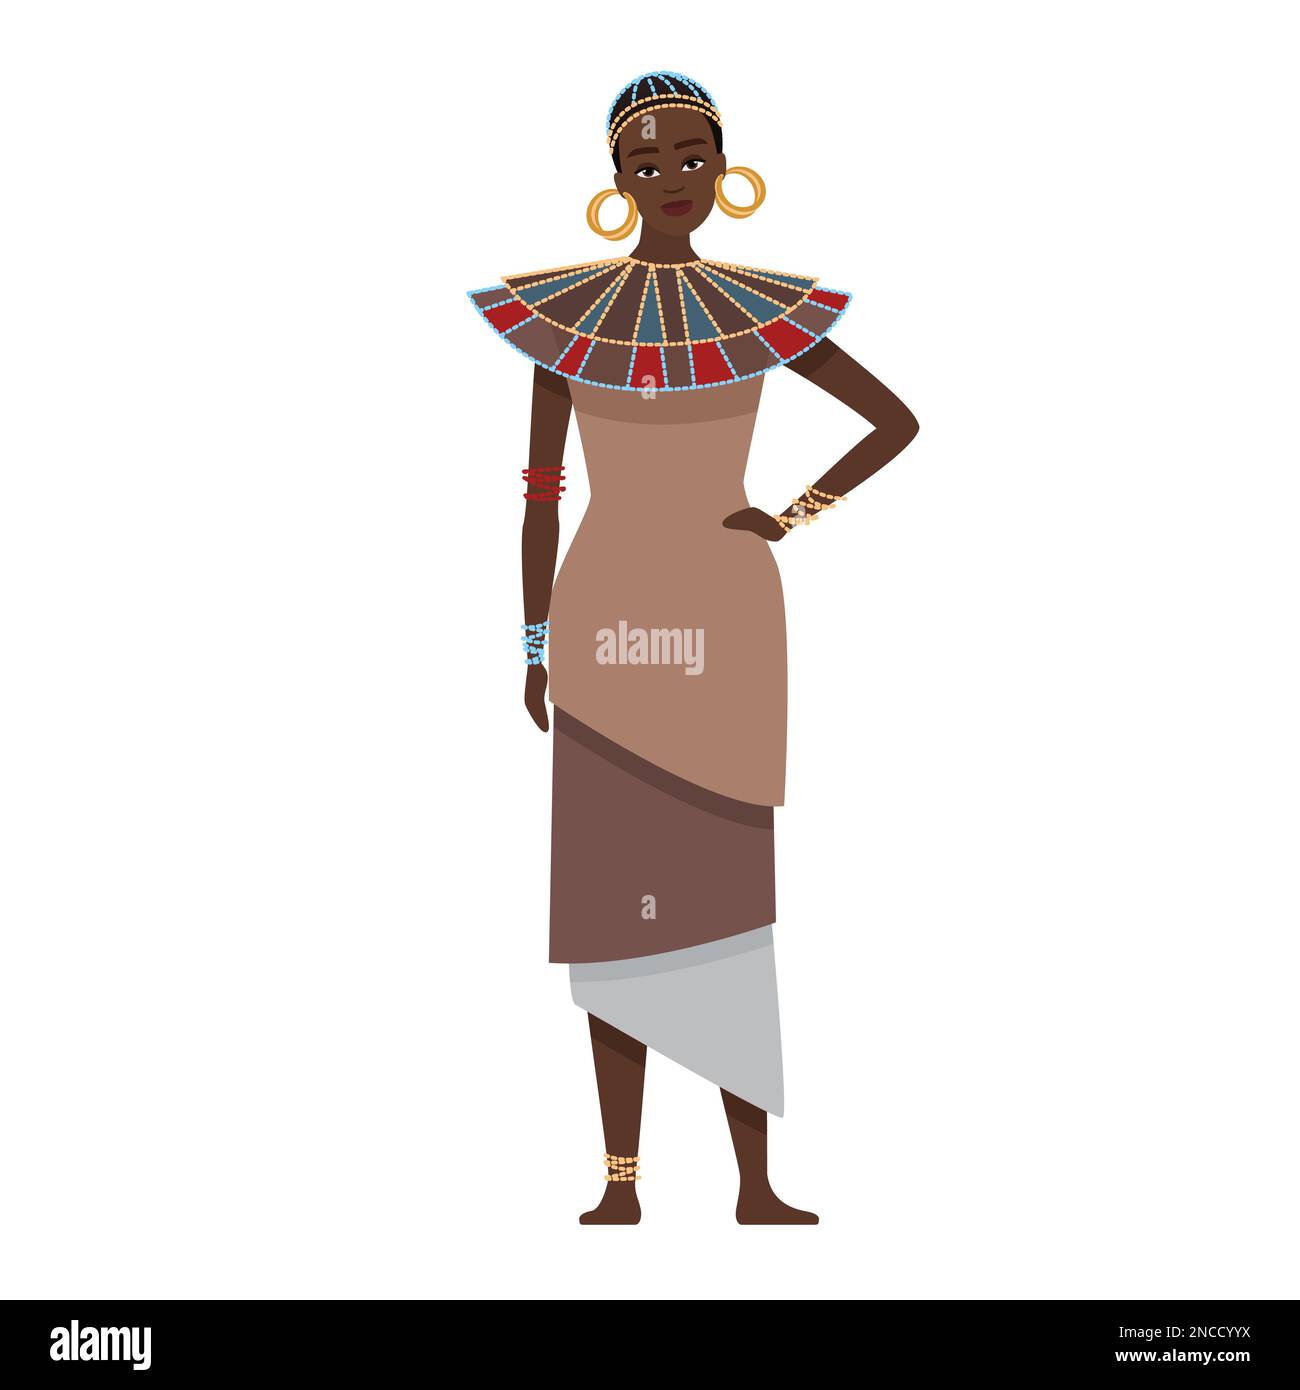 Femme africaine dans les ornements traditionnels. Illustration de caricatures vectorielles de la culture africaine et des vêtements ethniques tribaux Illustration de Vecteur